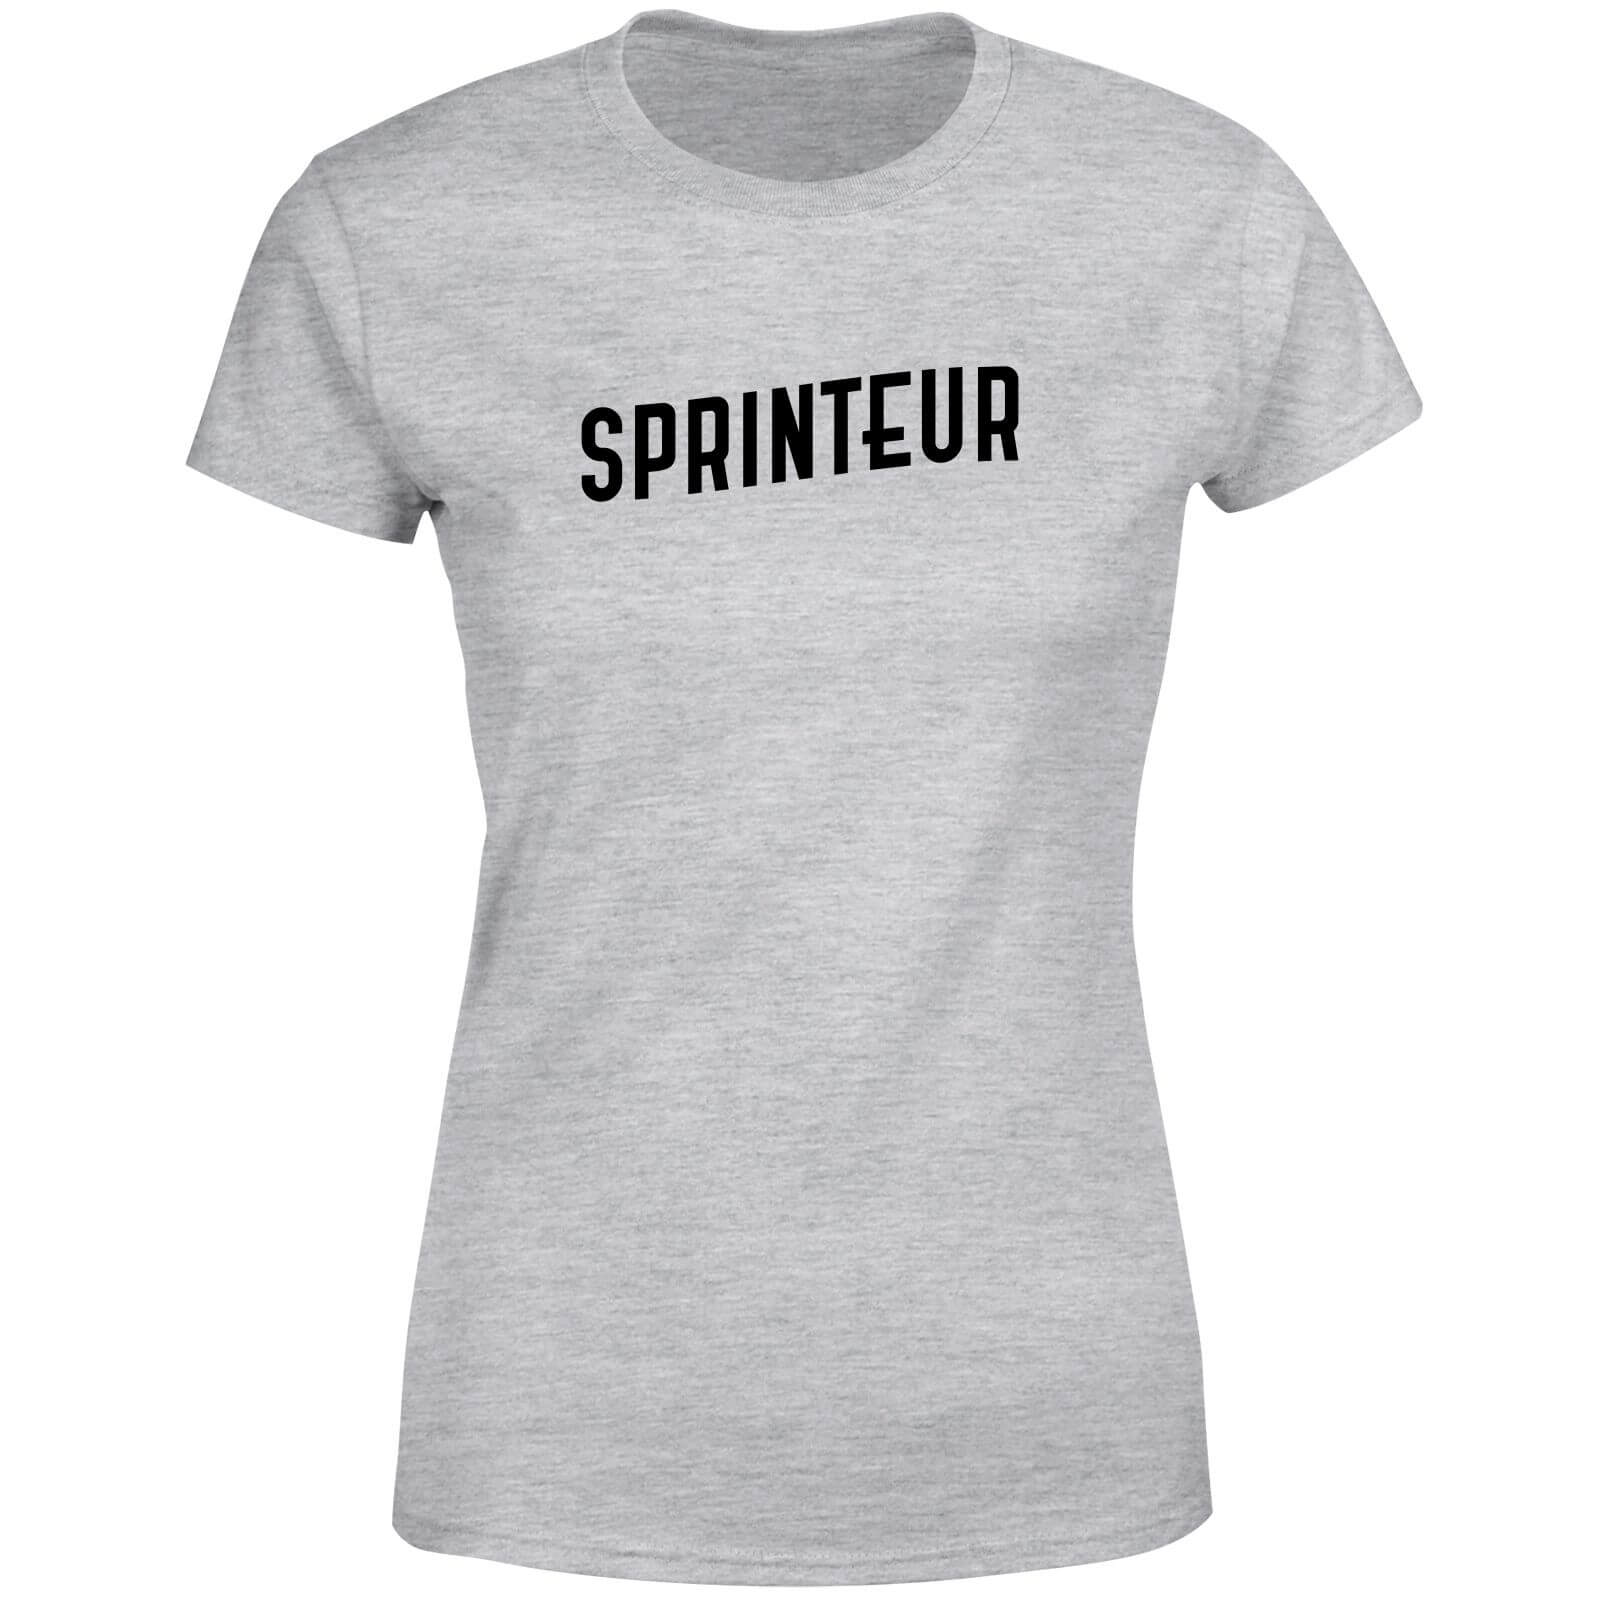 Sprinteur Women's T-Shirt - Grey - 4XL - Grey